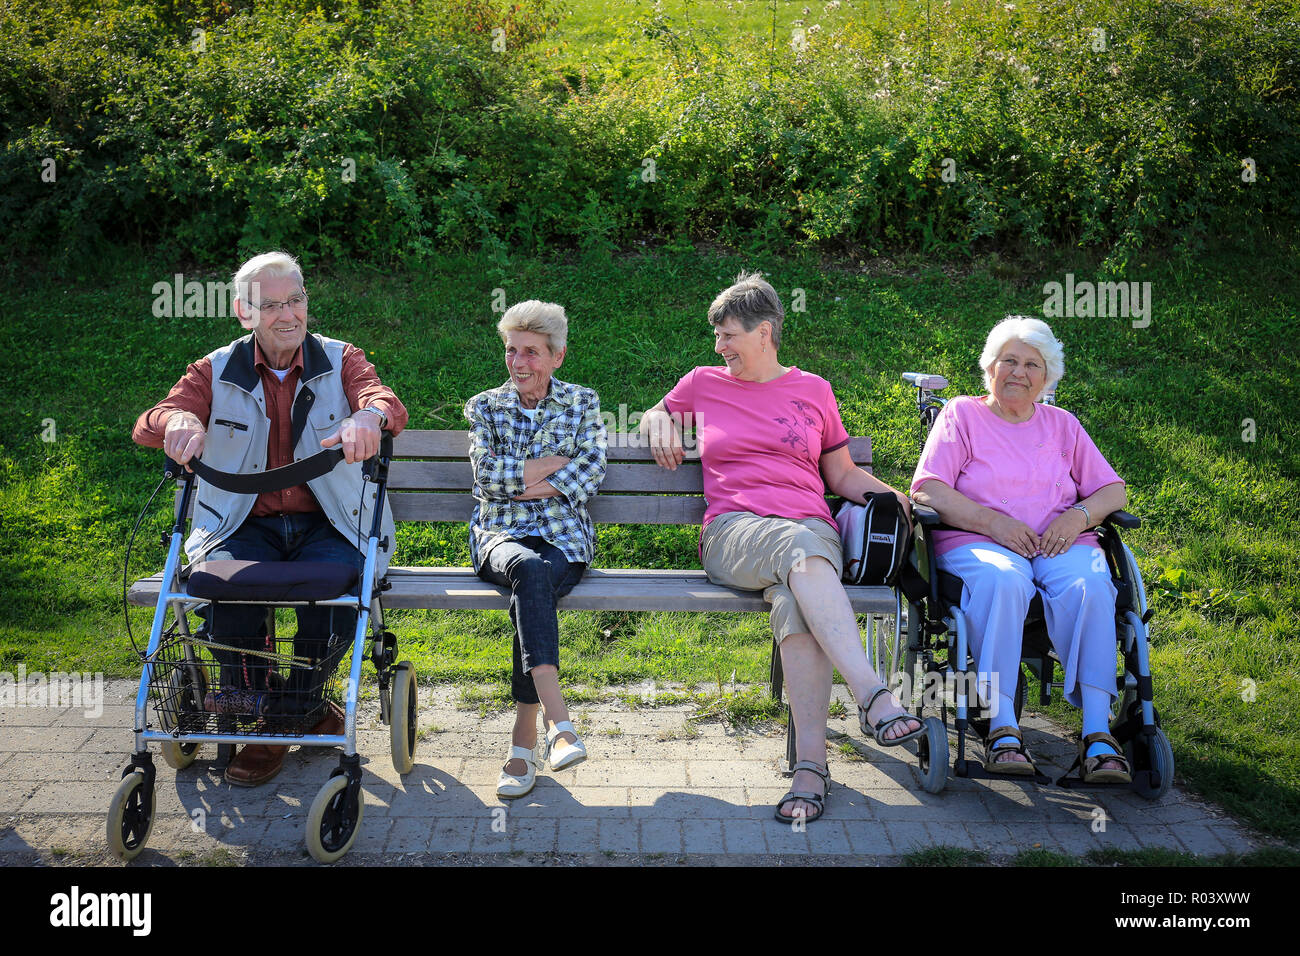 Essen, la zona della Ruhr, Germania, progetto di sviluppo urbano Niederfeldsee, amichevole dei cittadini anziani seduti su una panchina nel parco Foto Stock